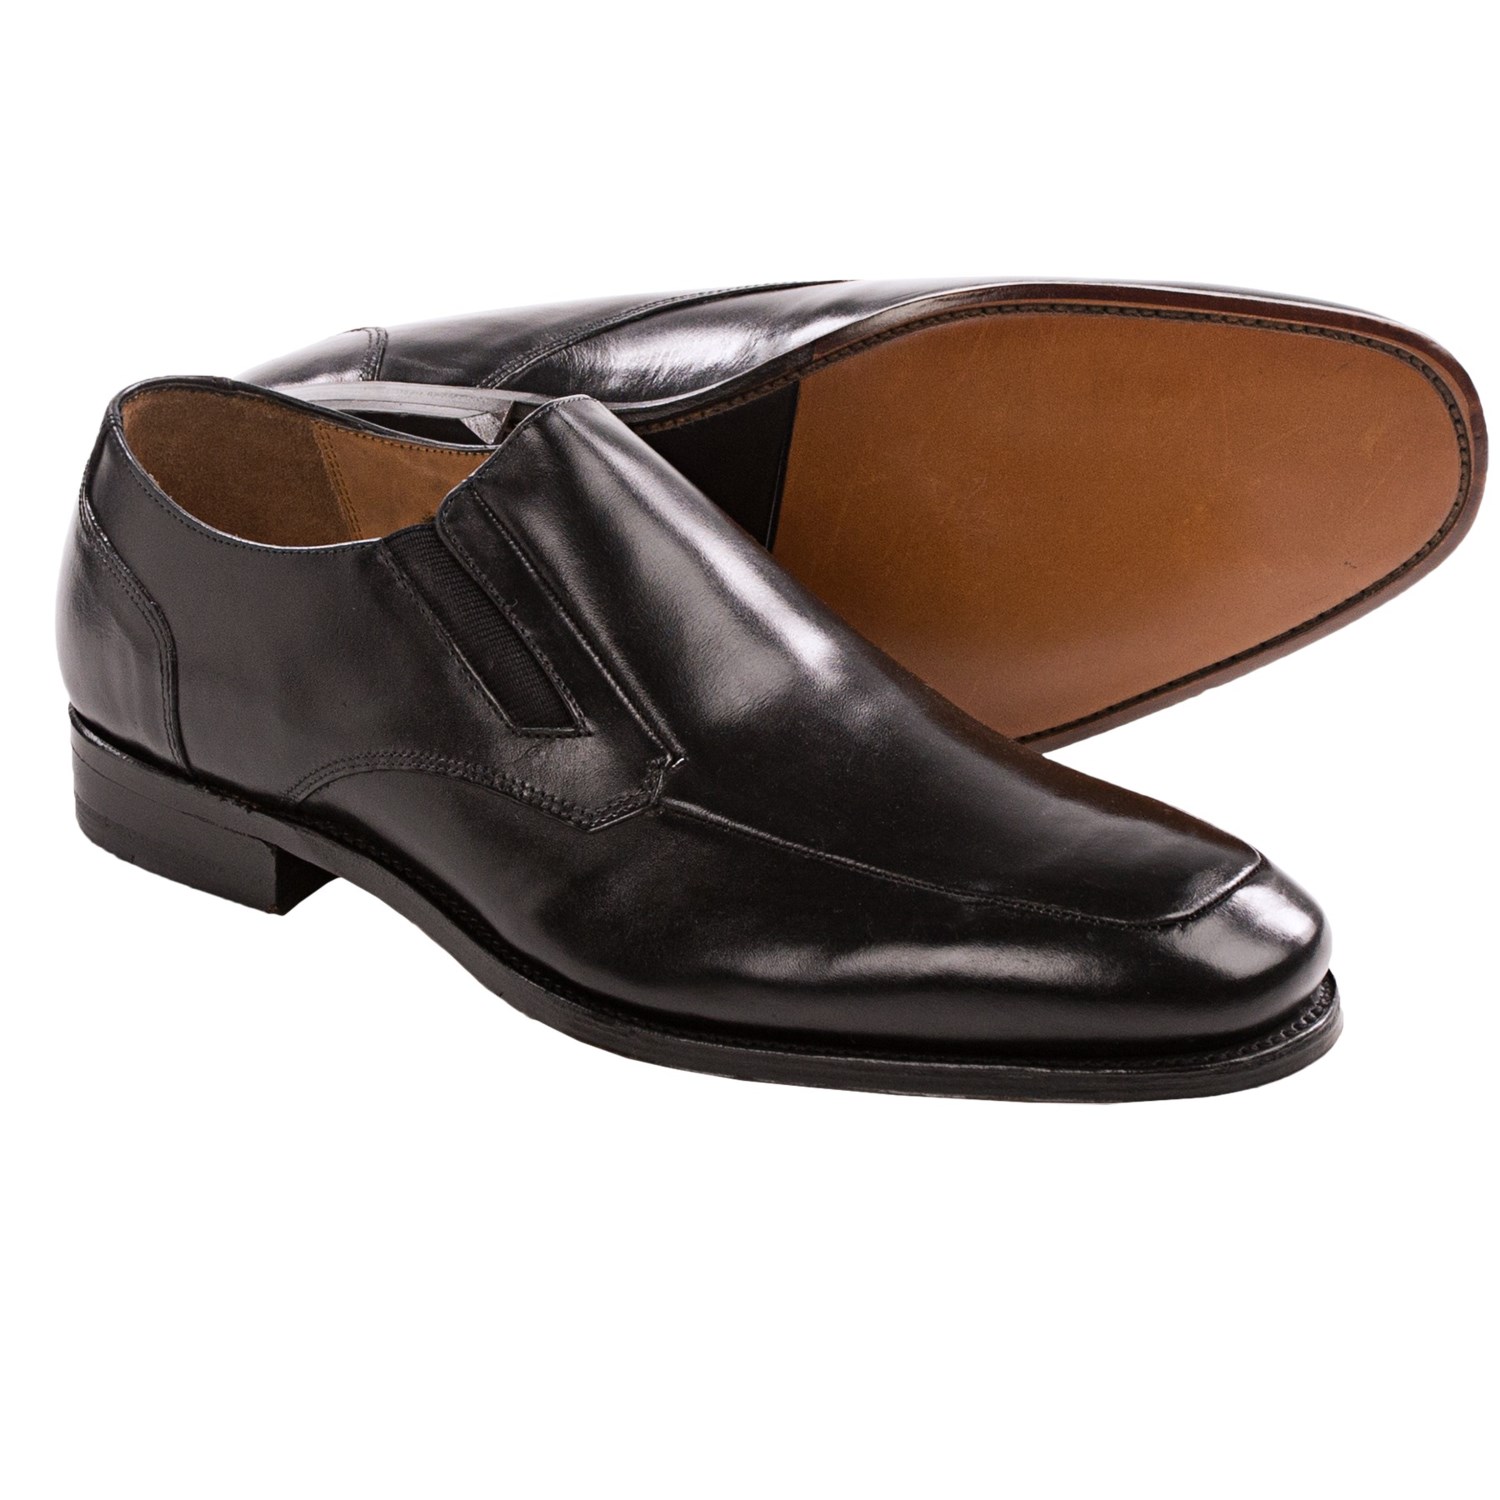 Florsheim Shoes For Men 89